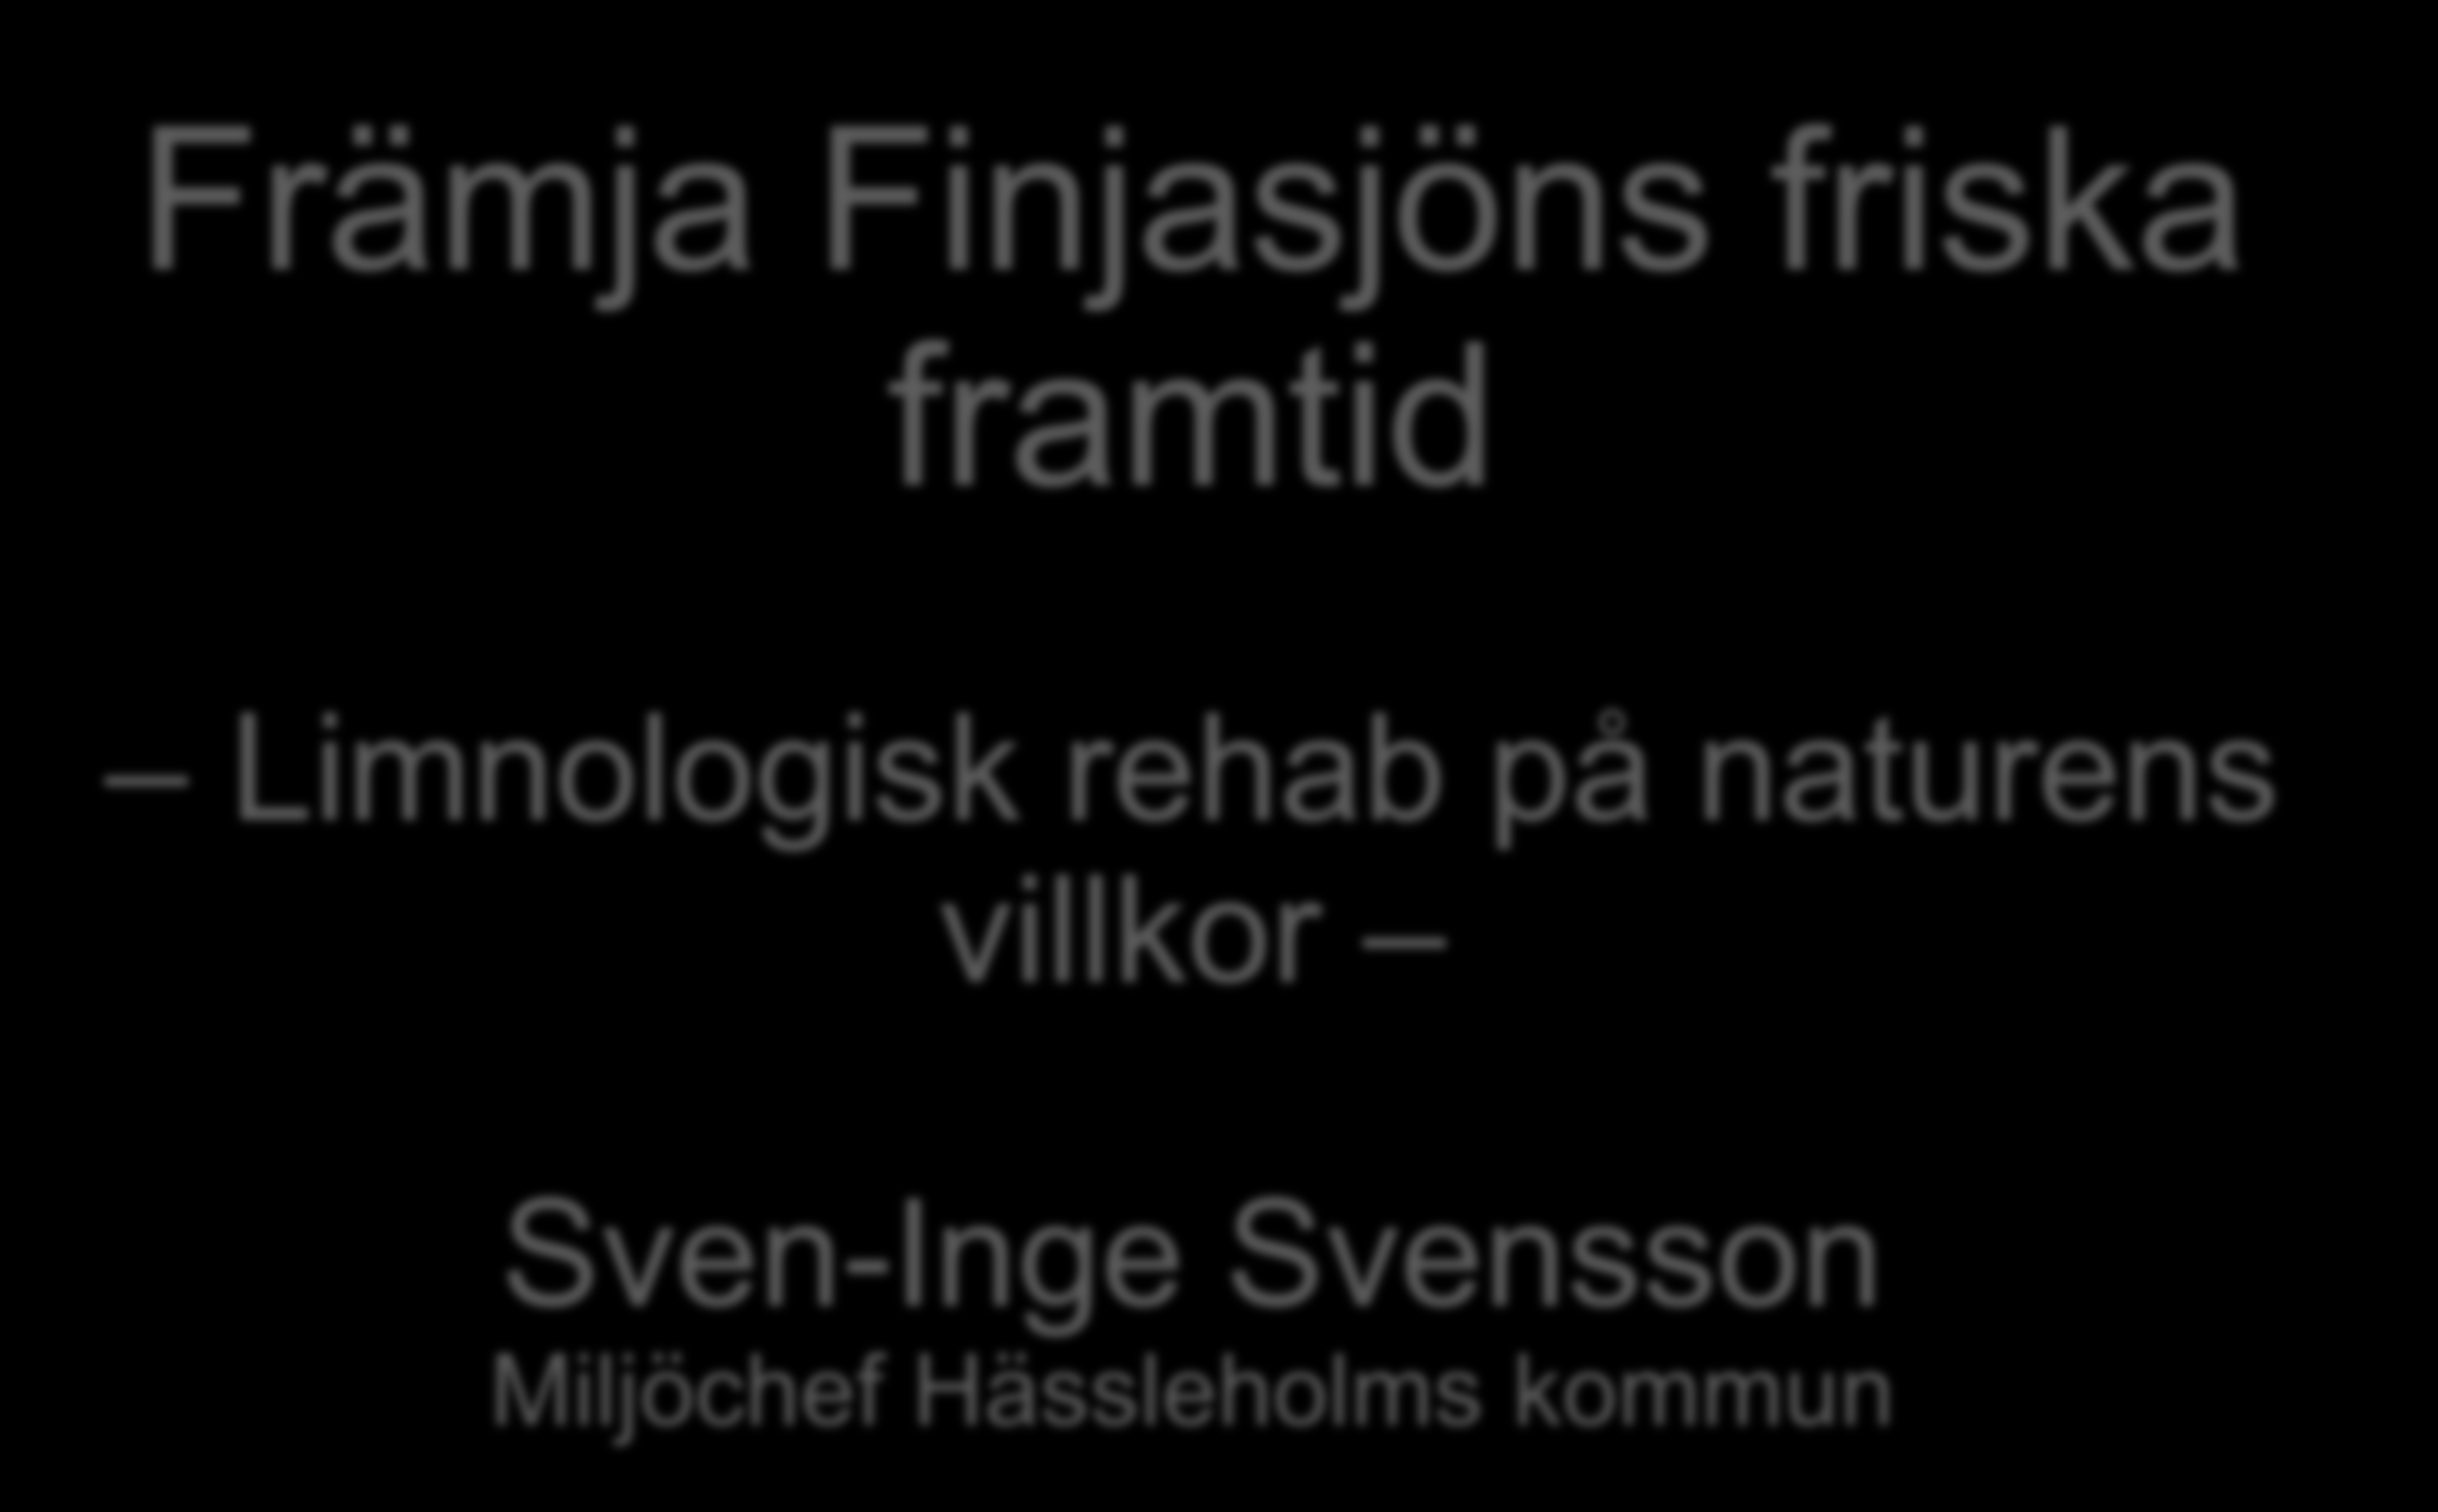 Främja Finjasjöns friska framtid Limnologisk rehab på